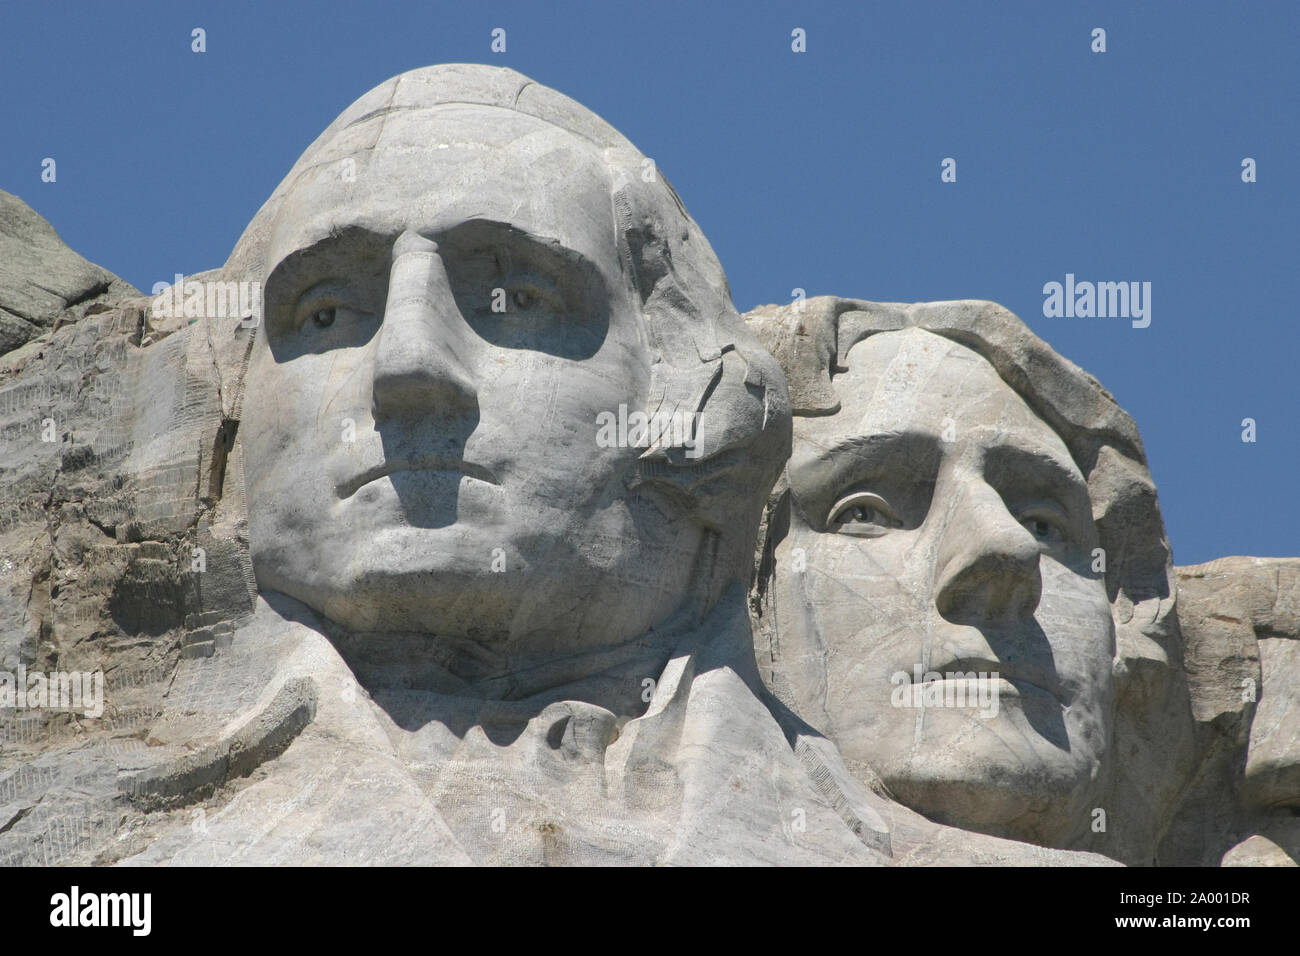 Presidents George Washington and Thomas Jefferson's stone faces on Mount Rushmore in South Dakota. Stock Photo